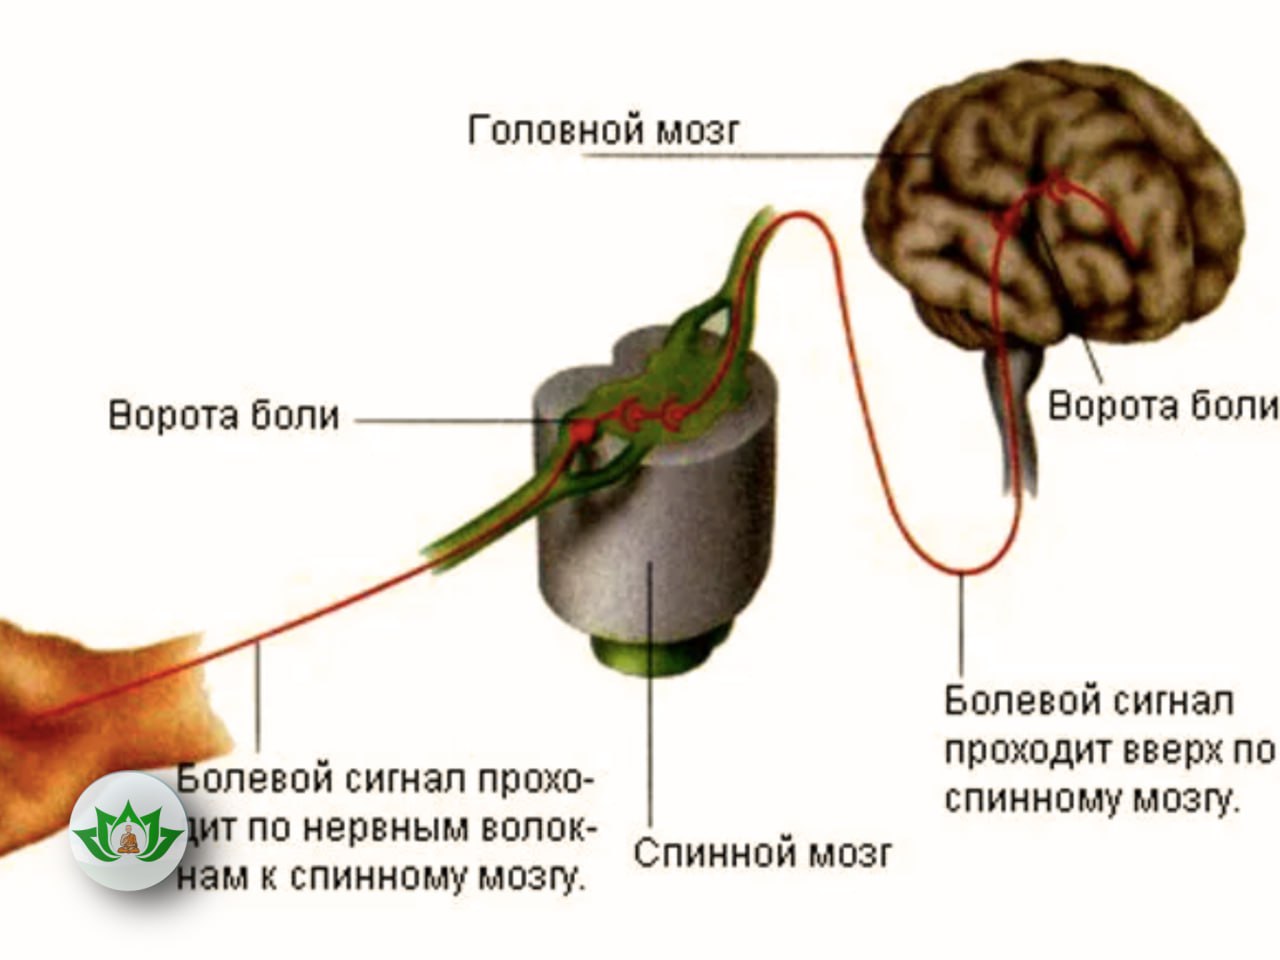 Brain sense. Передача нервного импульса в мозг. Передача нервного импульса в головной мозг. Путь передачи от рецепторов в головной мозг. Болевые рецепторы в мозге.